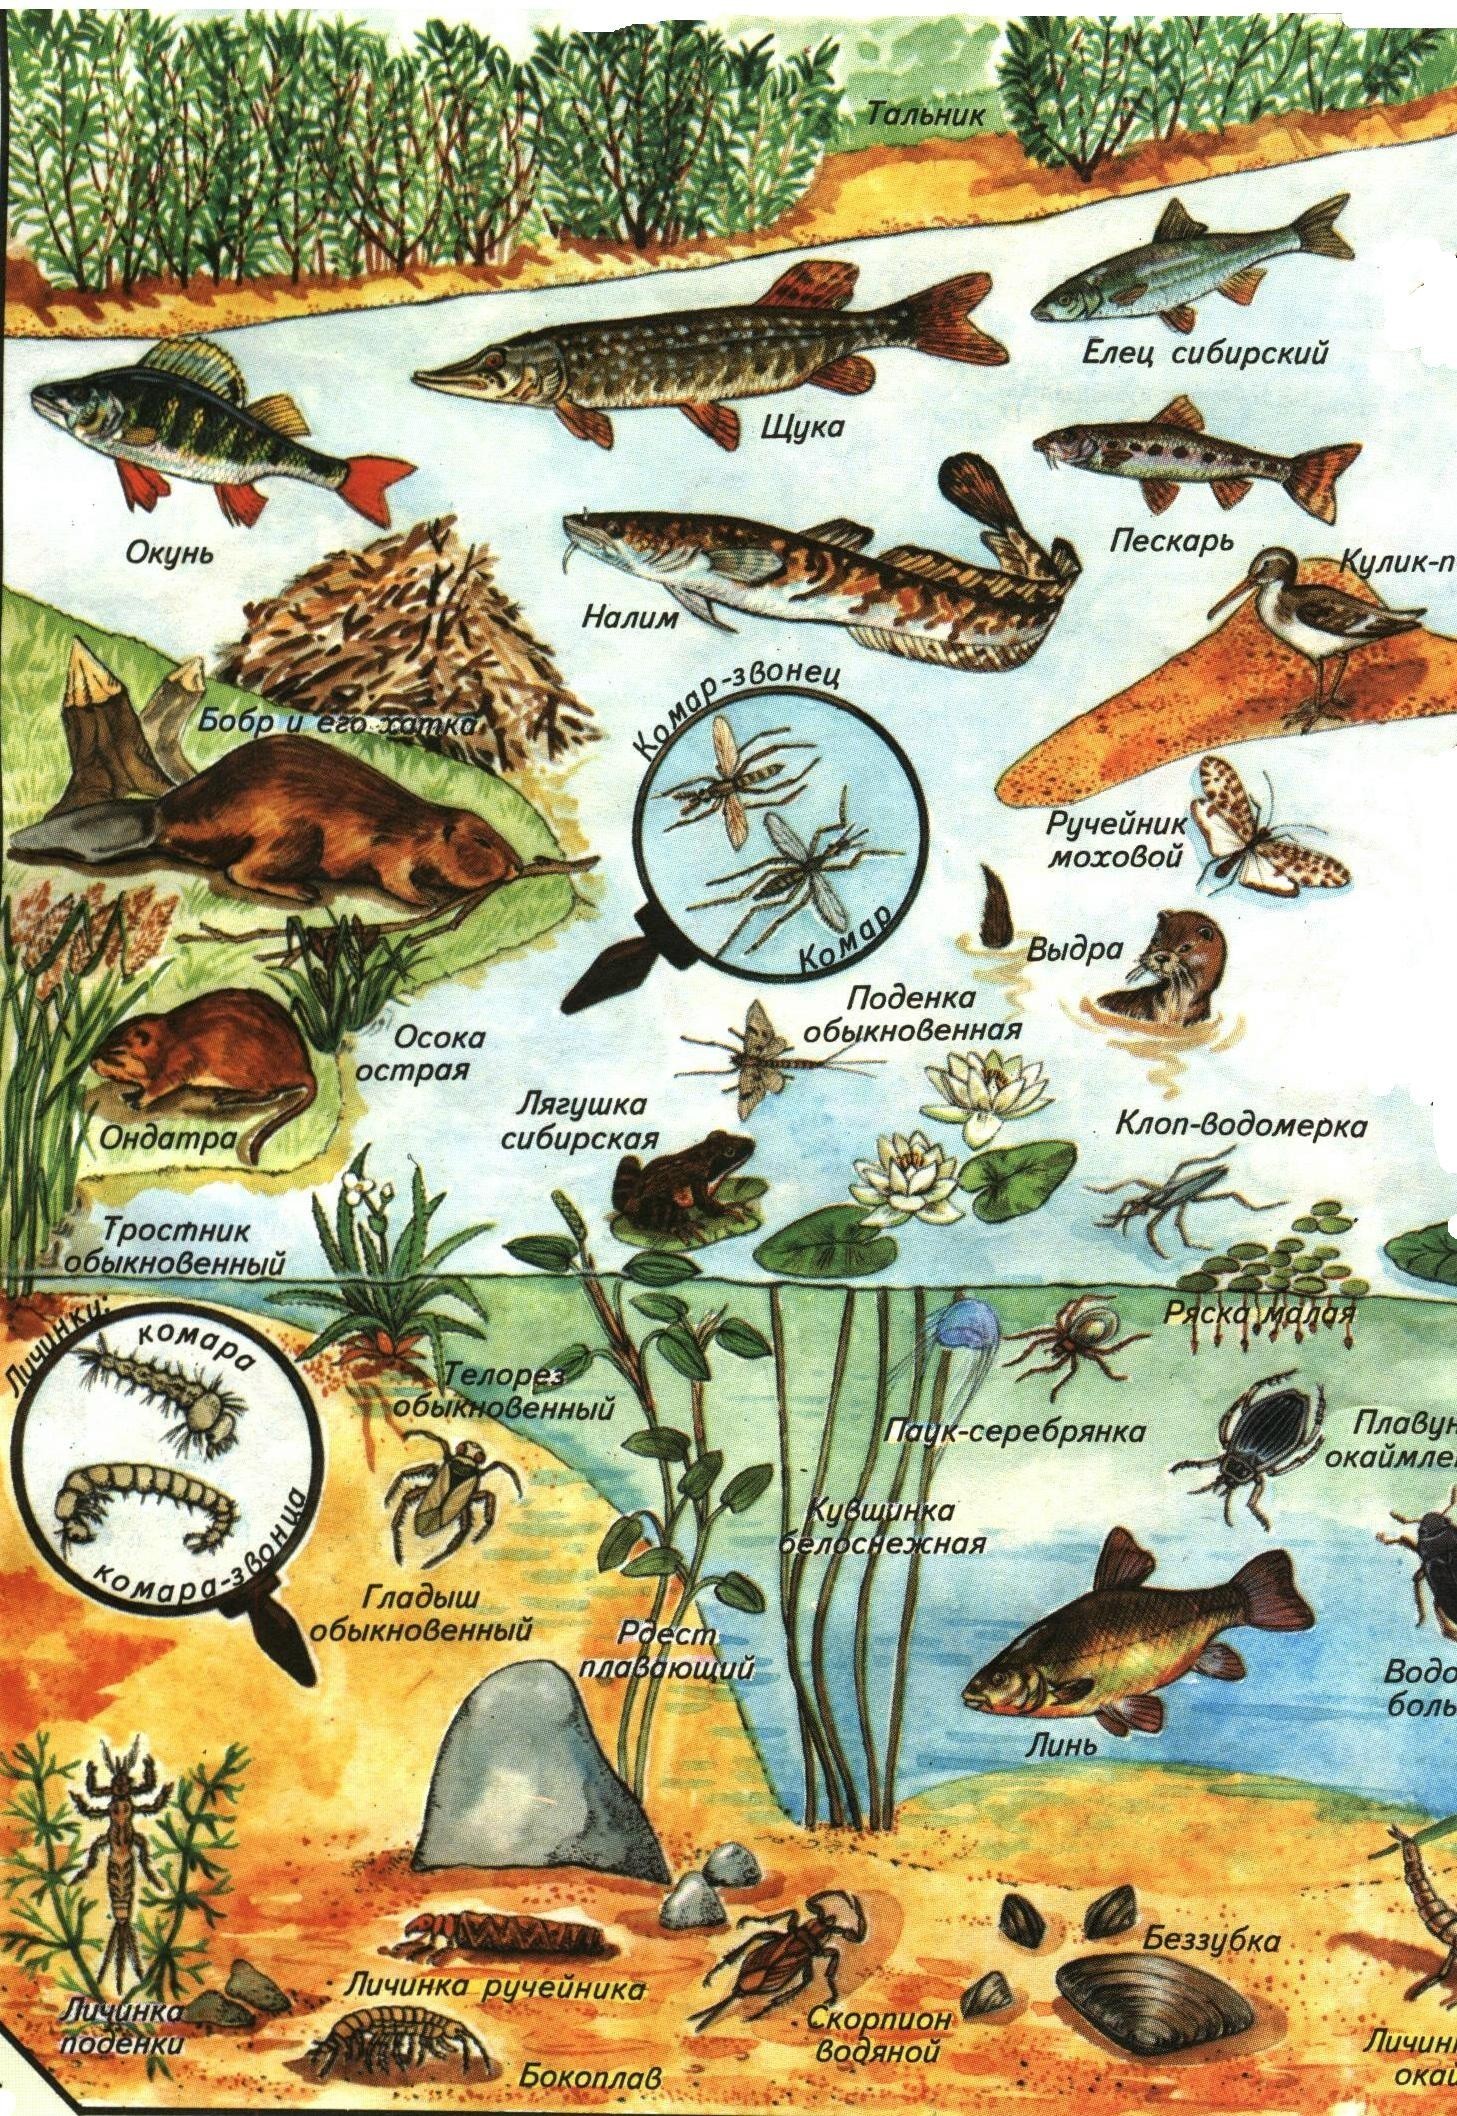 Водные животные: особенности, признаки, виды, примеры и фото